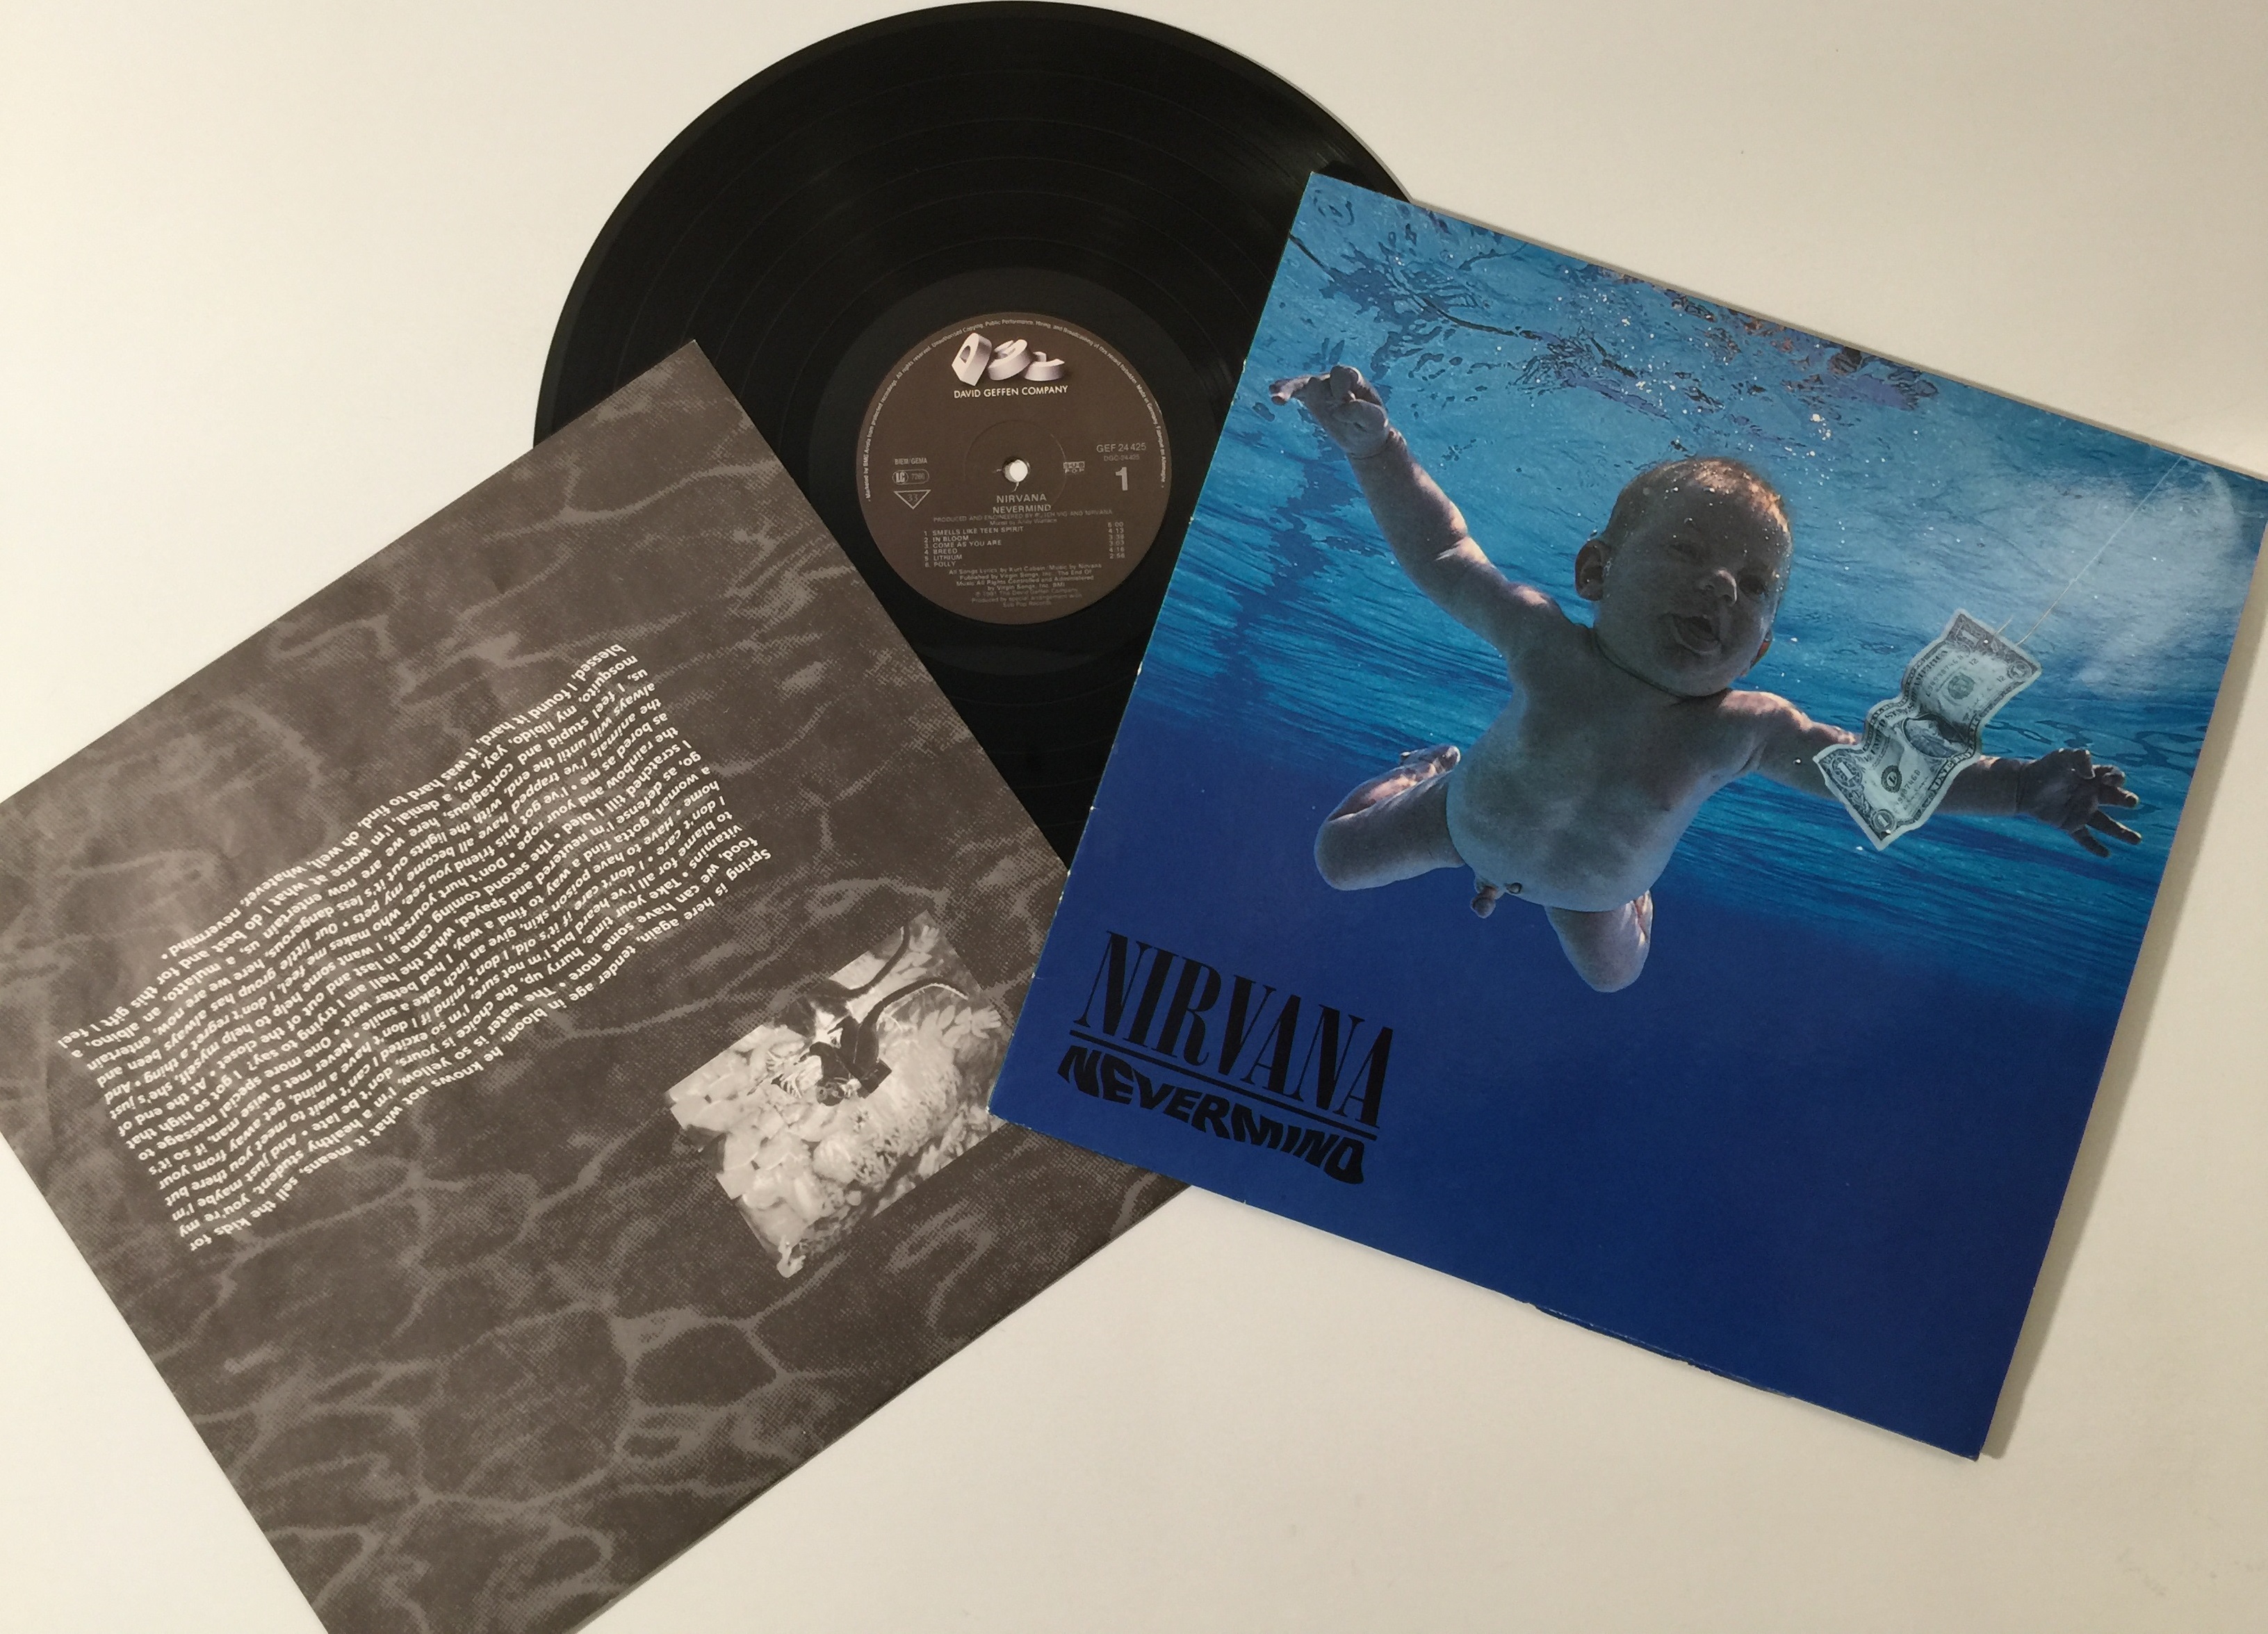 Nirvana Vinyl  Nevermind - Vinyl